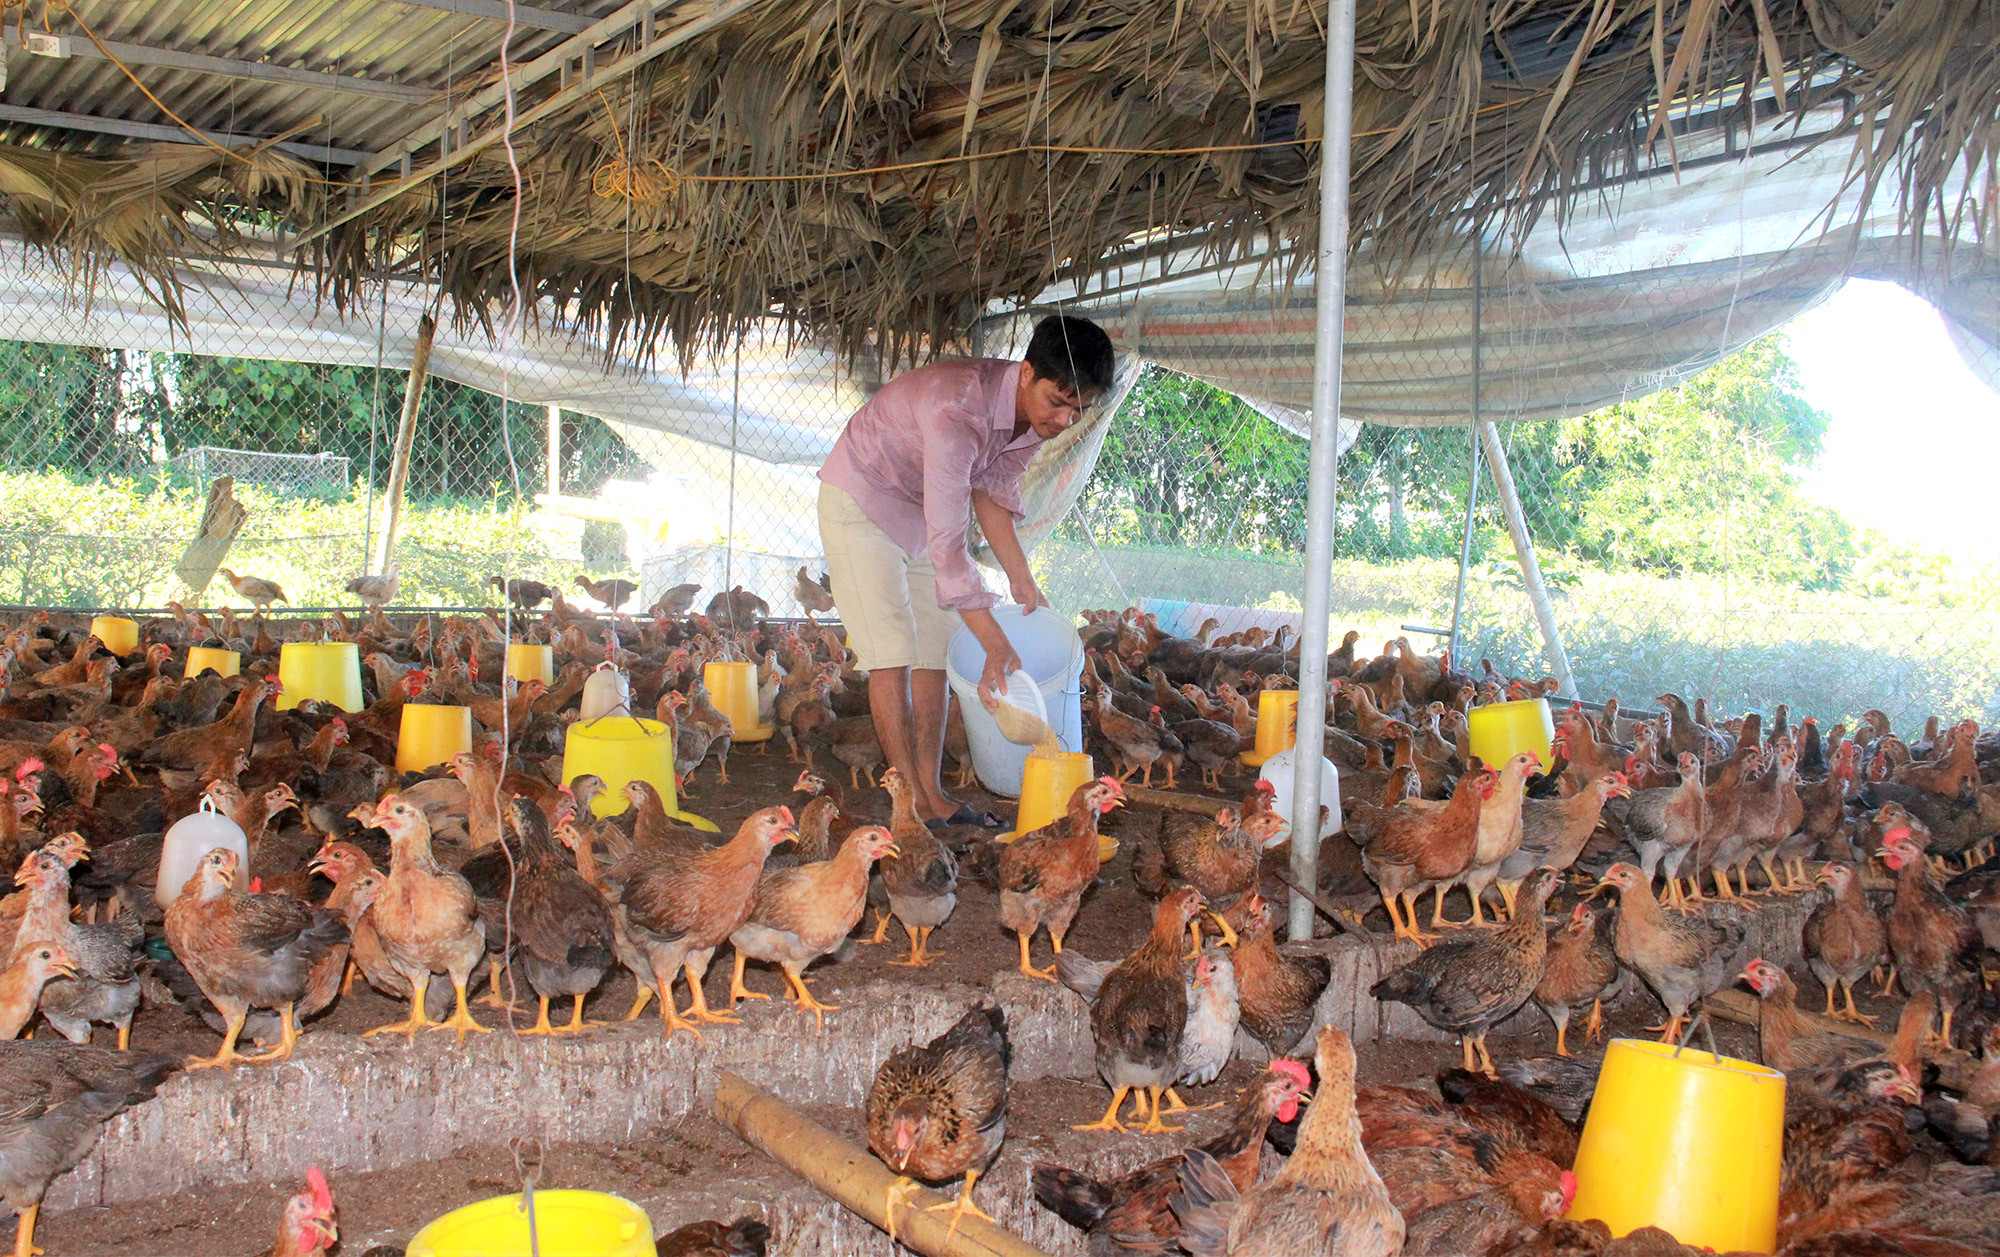 Mô hình nuôi gà thịt theo hướng an toàn sinh học, sử dụng nền chuồng bằng đệm lót sinh đang được bà con nông dân Anh Sơn nhân rộng